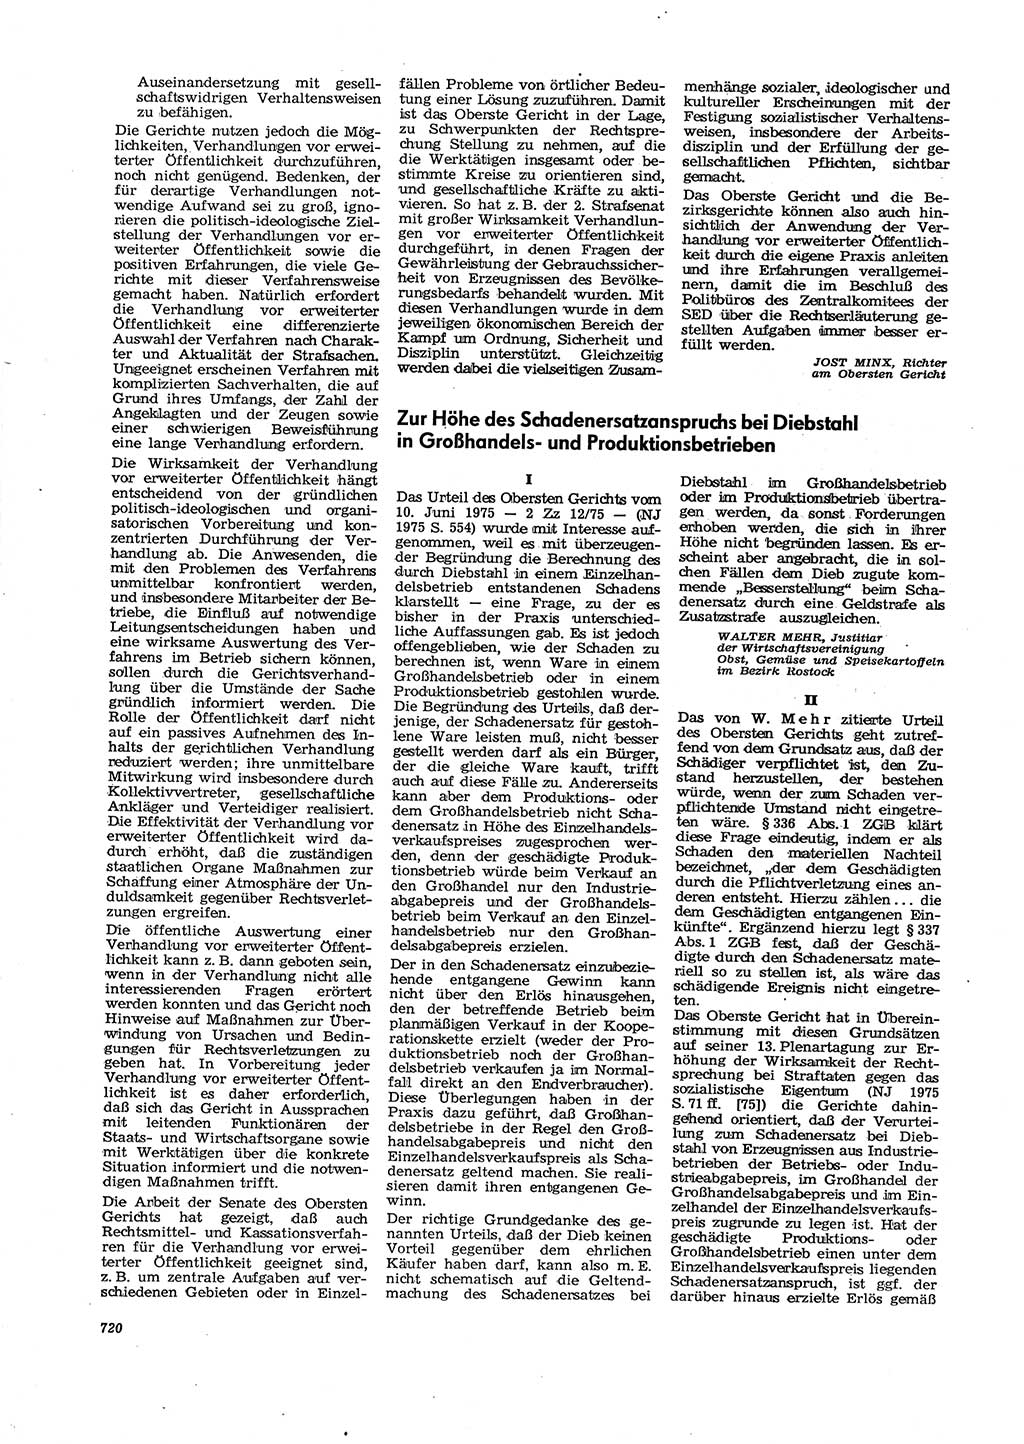 Neue Justiz (NJ), Zeitschrift für Recht und Rechtswissenschaft [Deutsche Demokratische Republik (DDR)], 29. Jahrgang 1975, Seite 720 (NJ DDR 1975, S. 720)